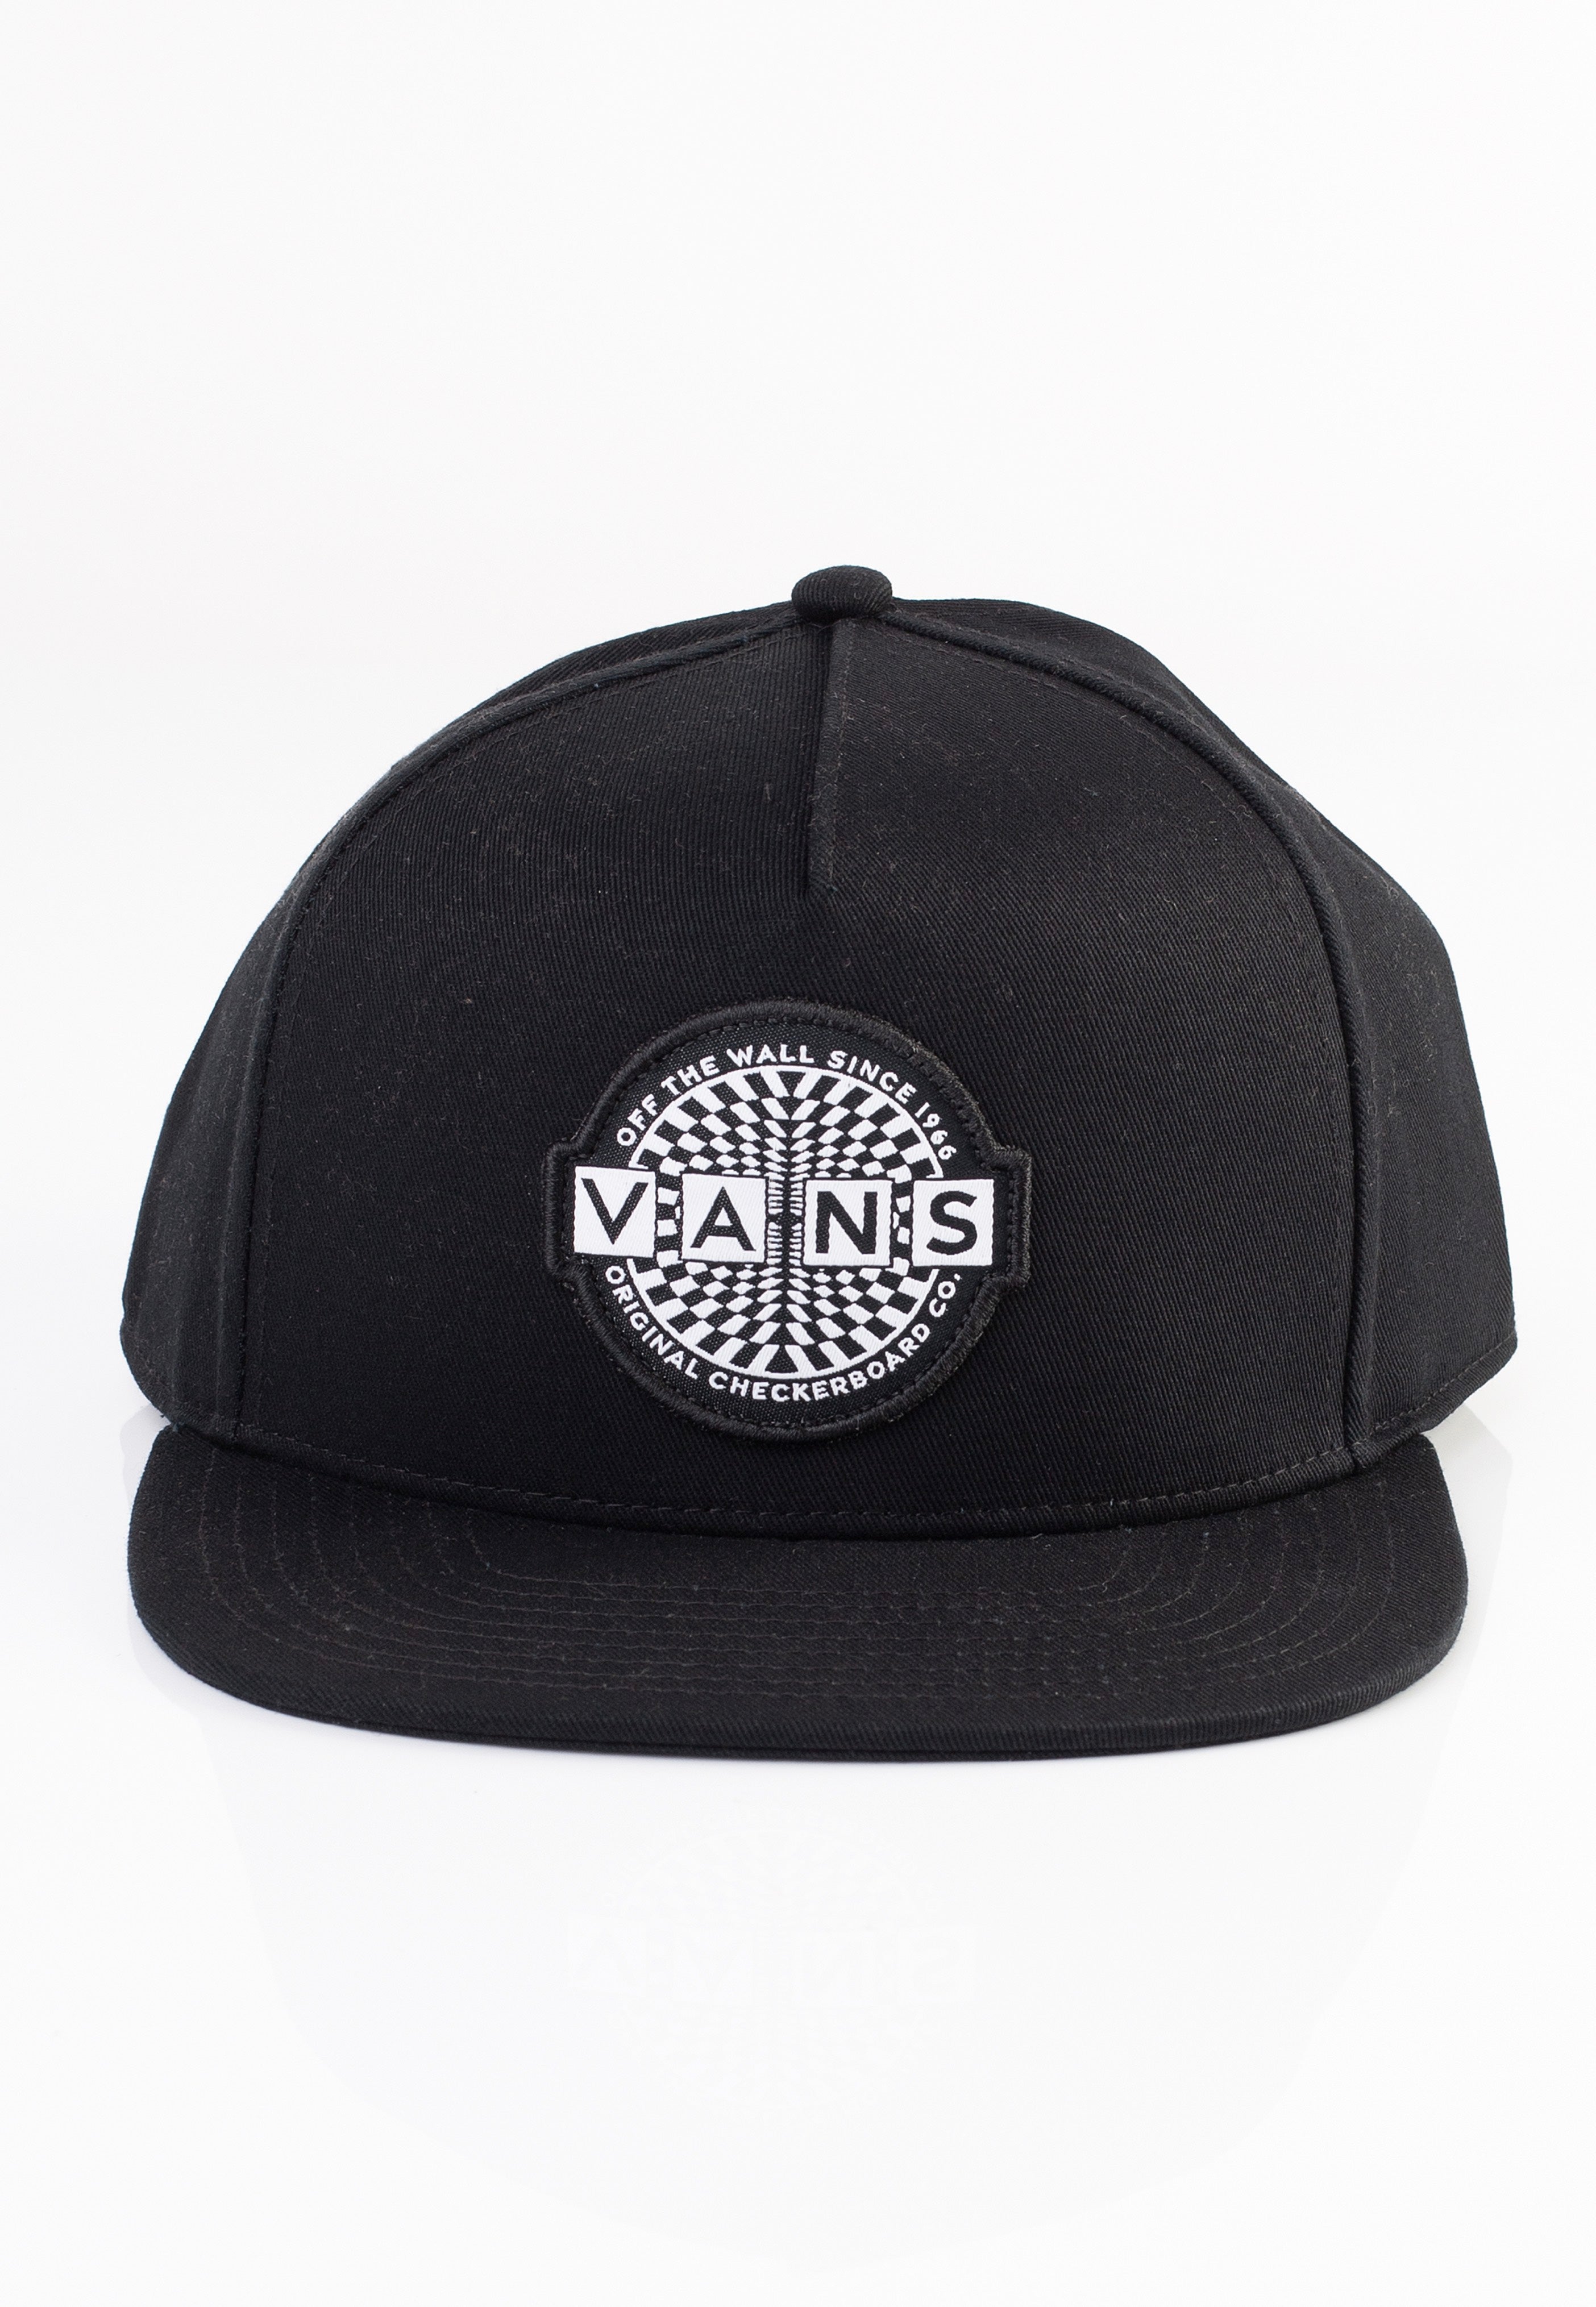 Vans - Original Check Snapback Black - Cap